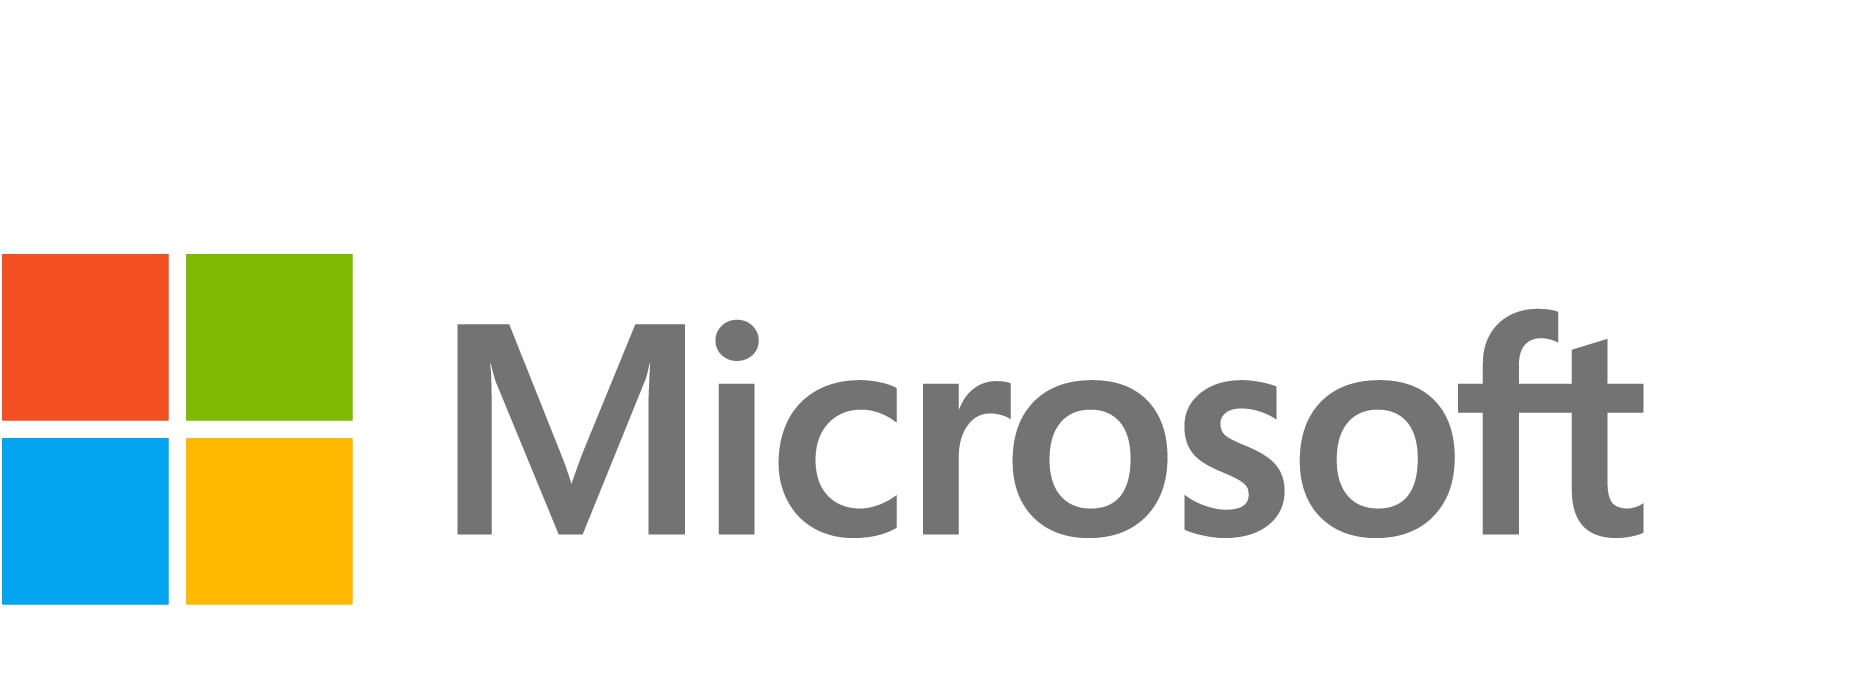 Microsoft SQL Server 2022 Standard - license - 1 server